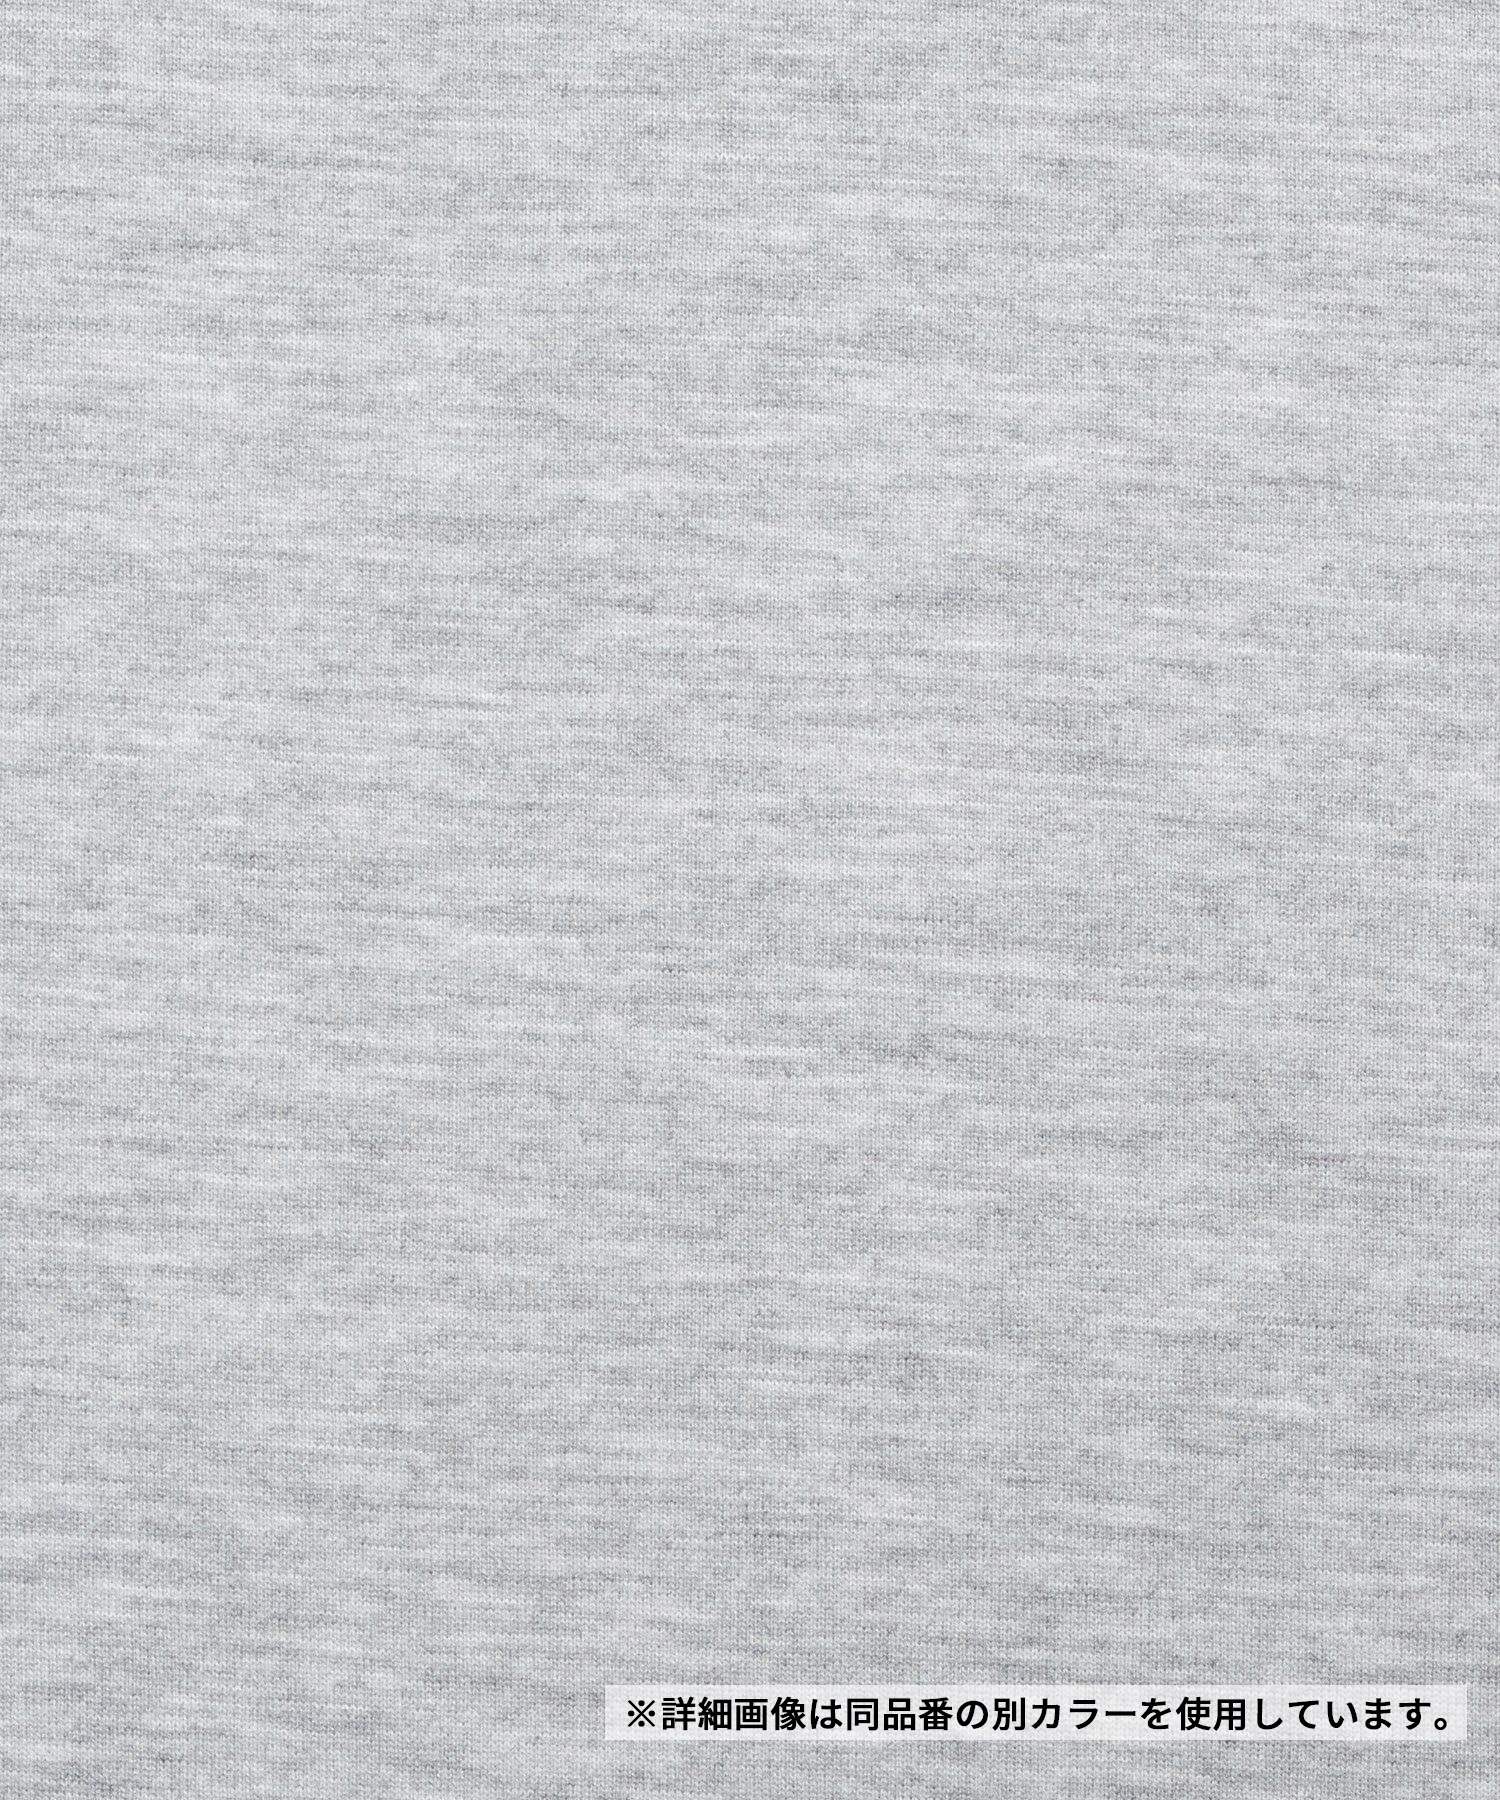 【マトメガイ対象】THE NORTH FACE ザ・ノース・フェイス メンズ Tシャツ 半袖 スクエアロゴ バックプリント 速乾 カモフラ柄 迷彩柄 NT32437 K(K-S)